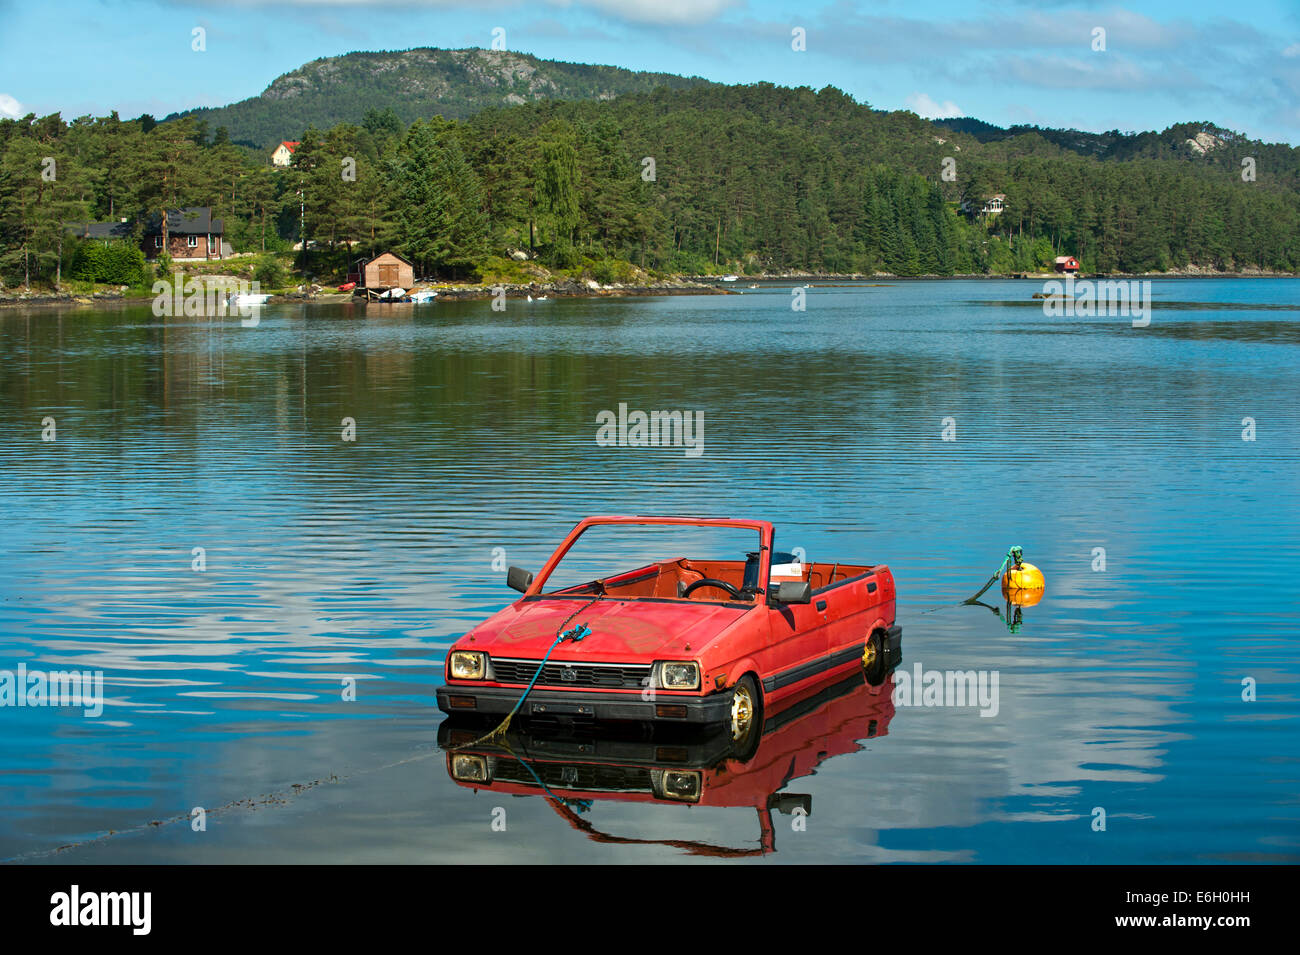 Une Subaru voiture transformé en bateau flottant sur un lac, la Norvège Banque D'Images